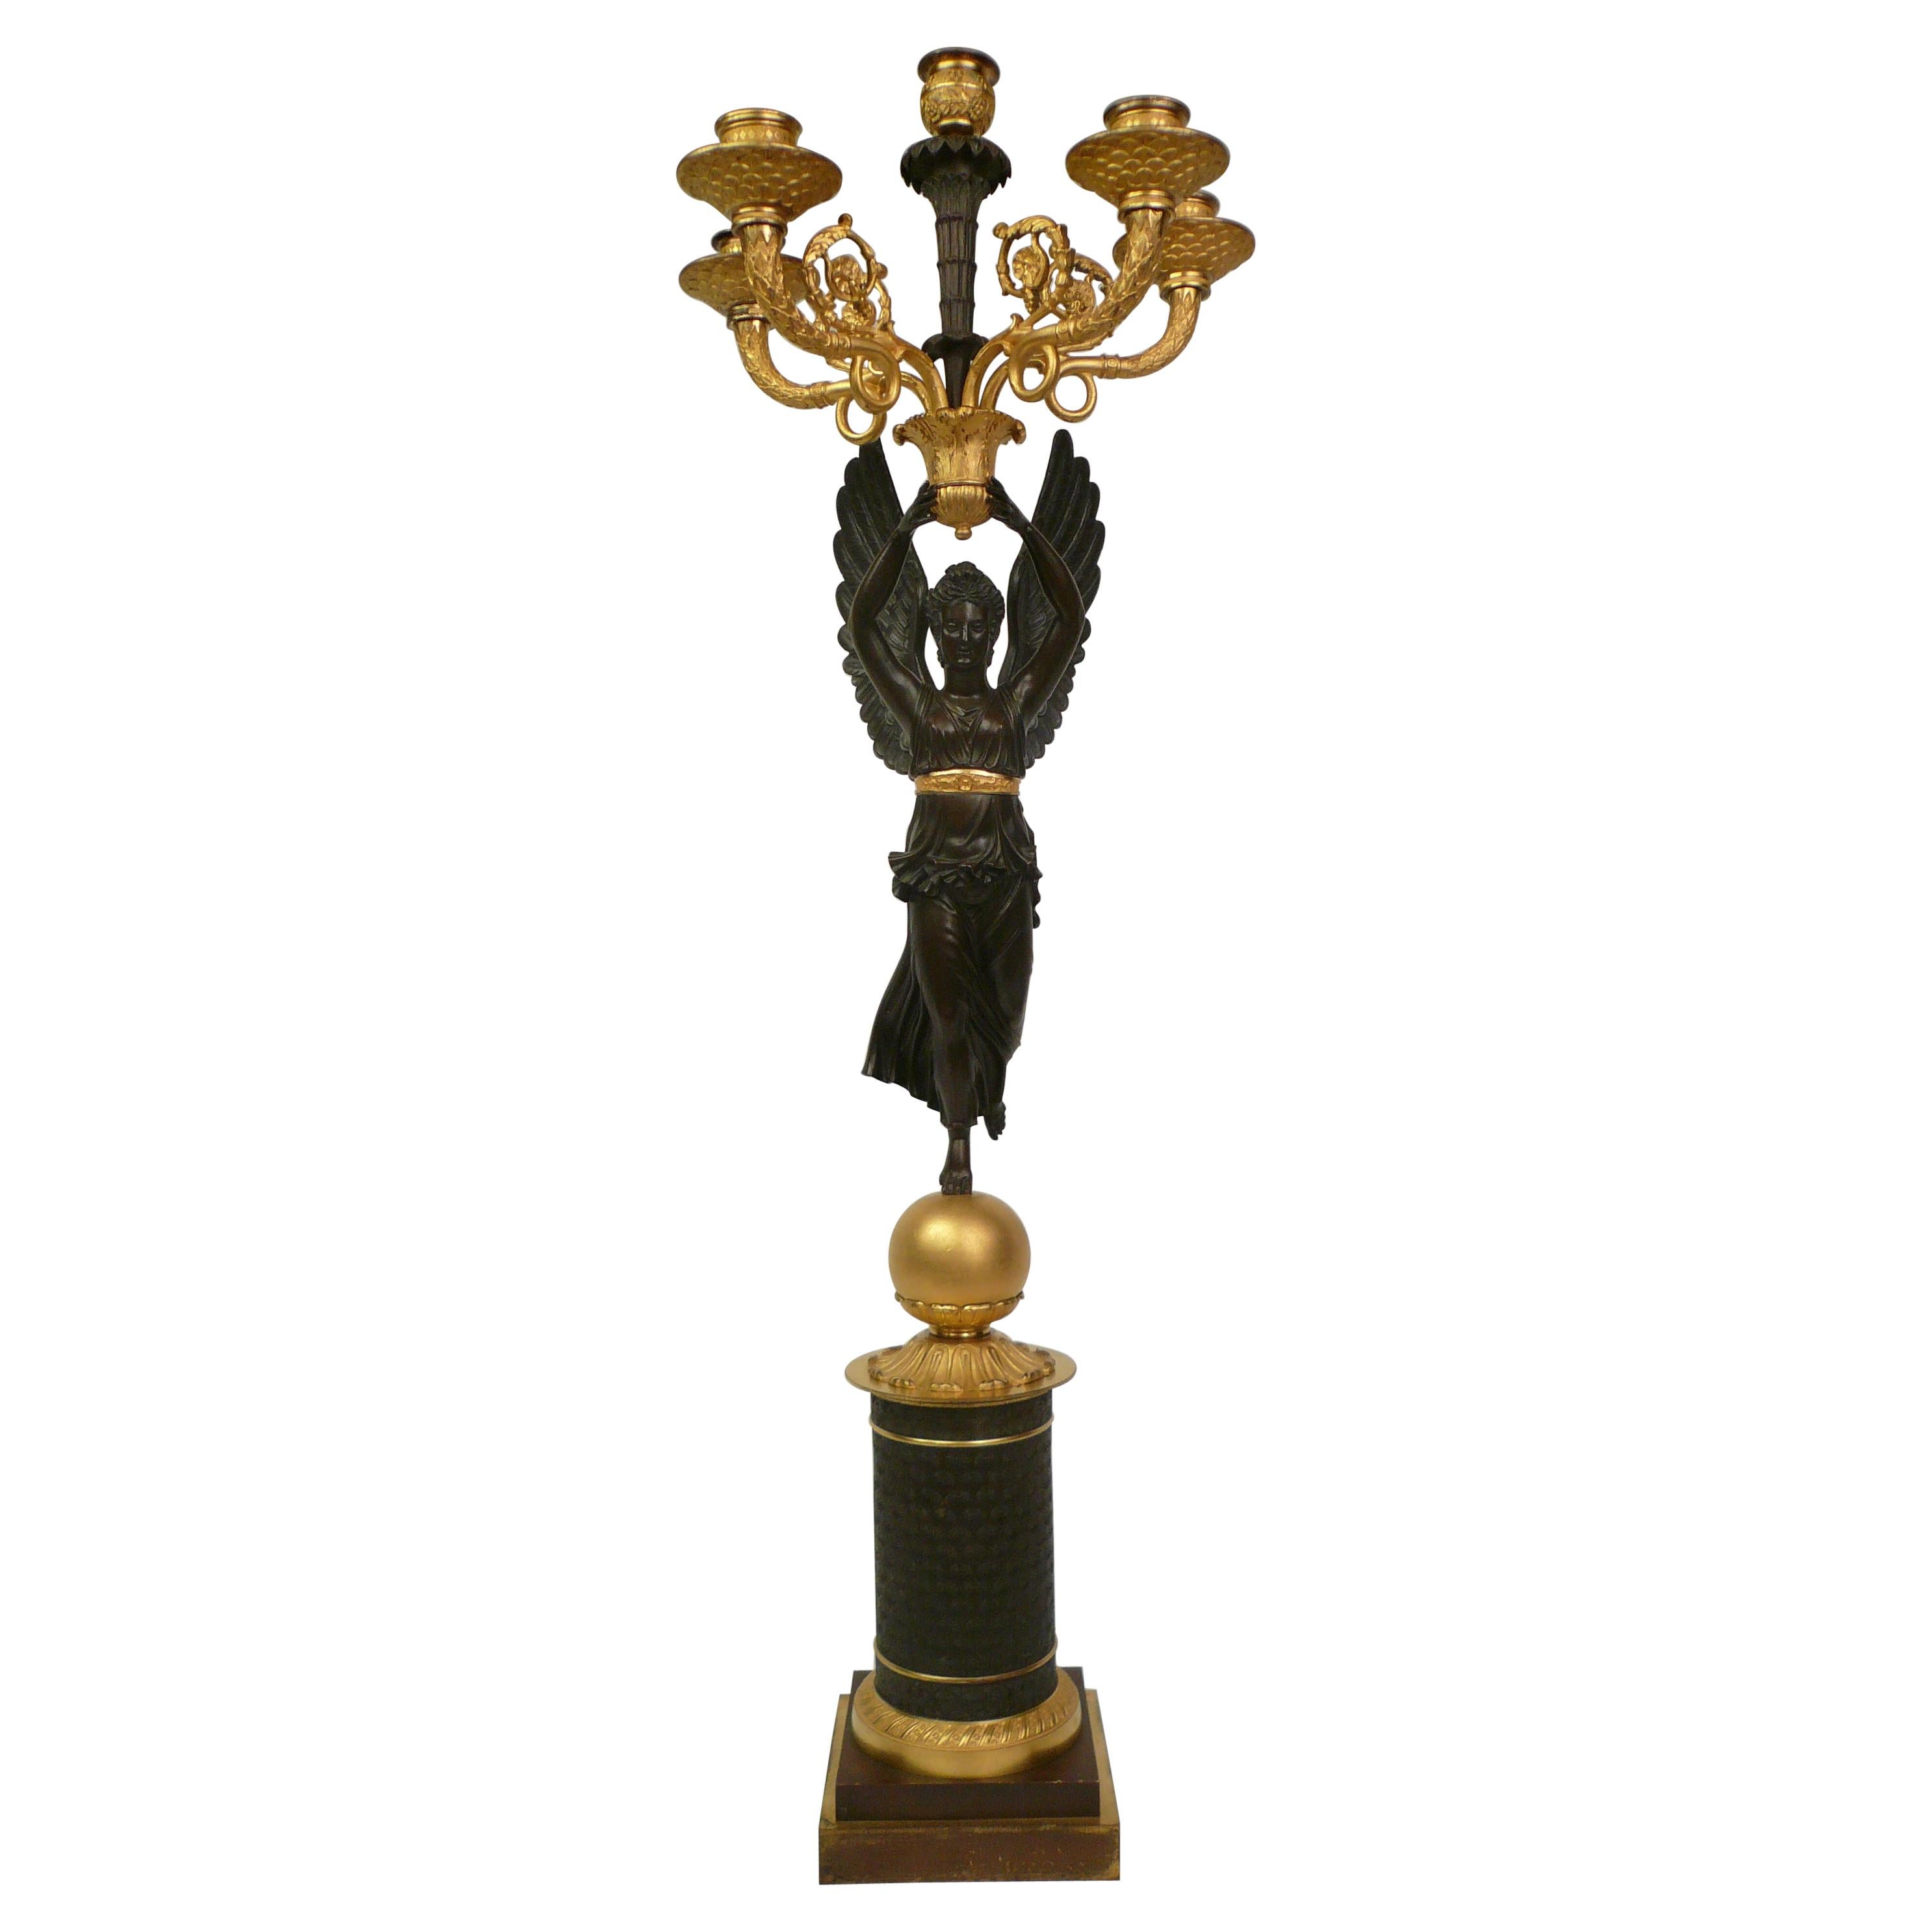 Candélabre figuratif Empire français du début du XIXe siècle en bronze, représentant Niké